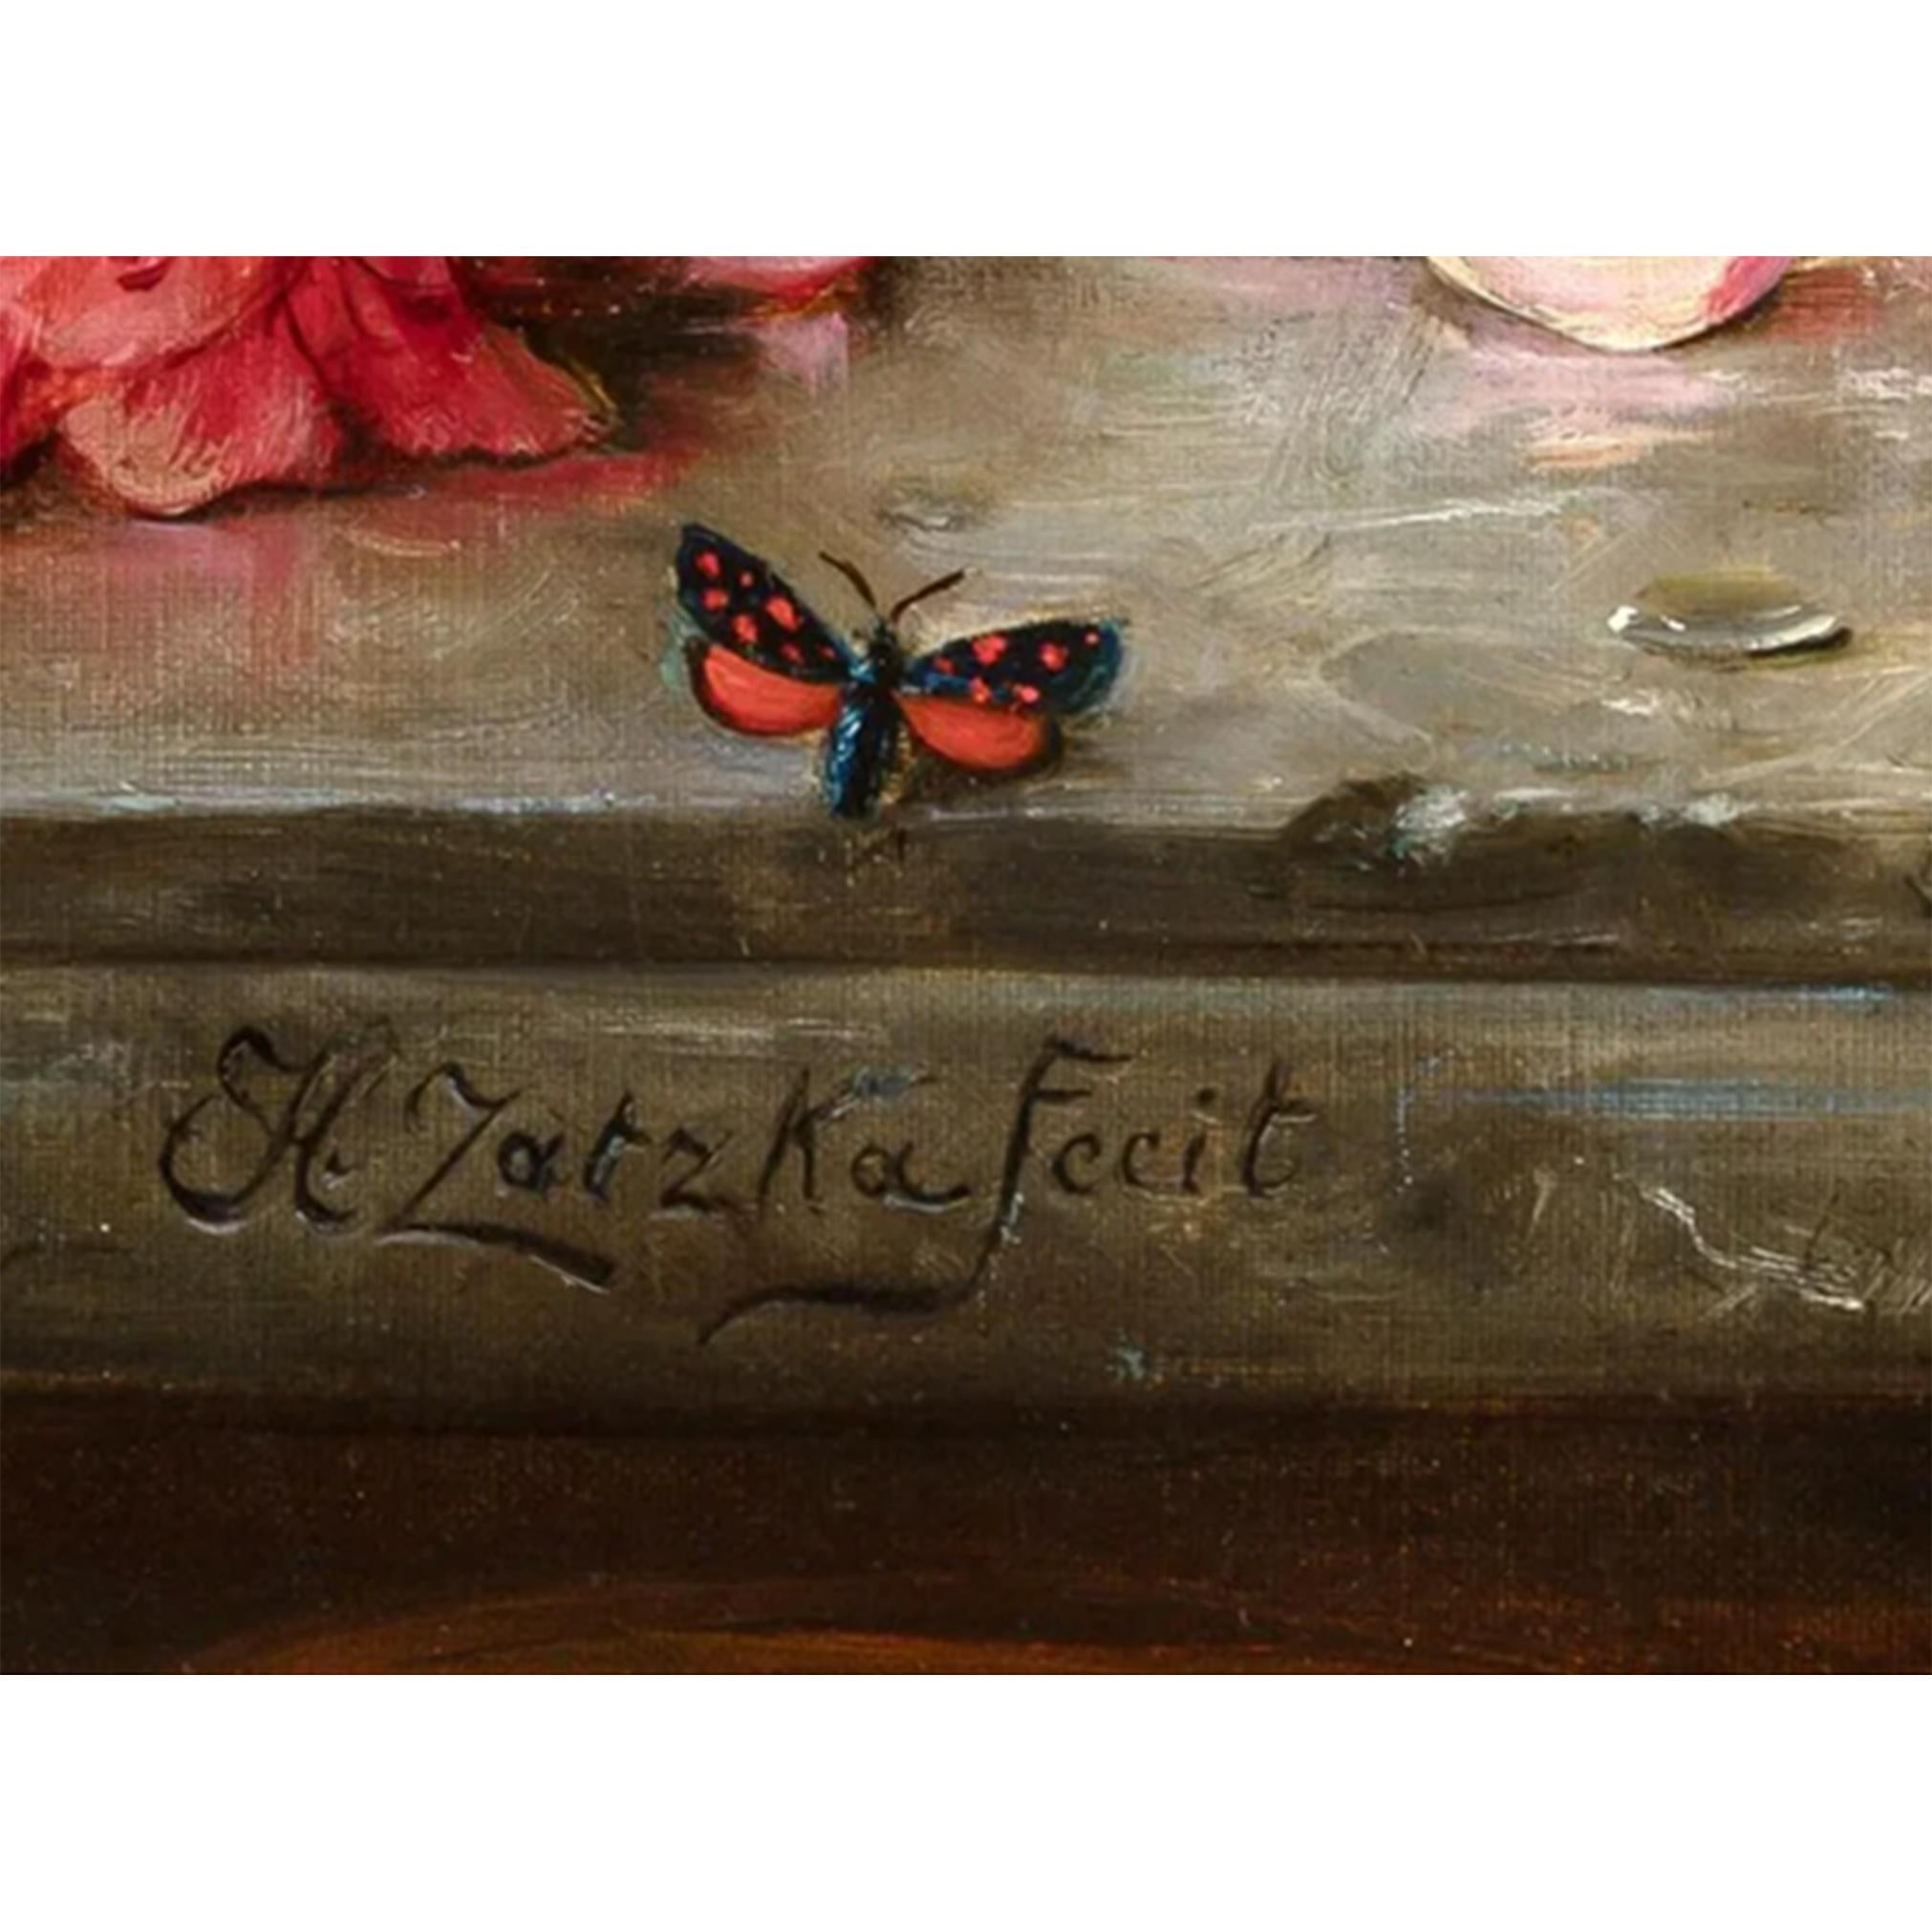 Zatzka (1859-1945) Still Life of Flowers, Butterflies and a Bird in Jardiniere - Brown Still-Life Painting by Hans Zatzka